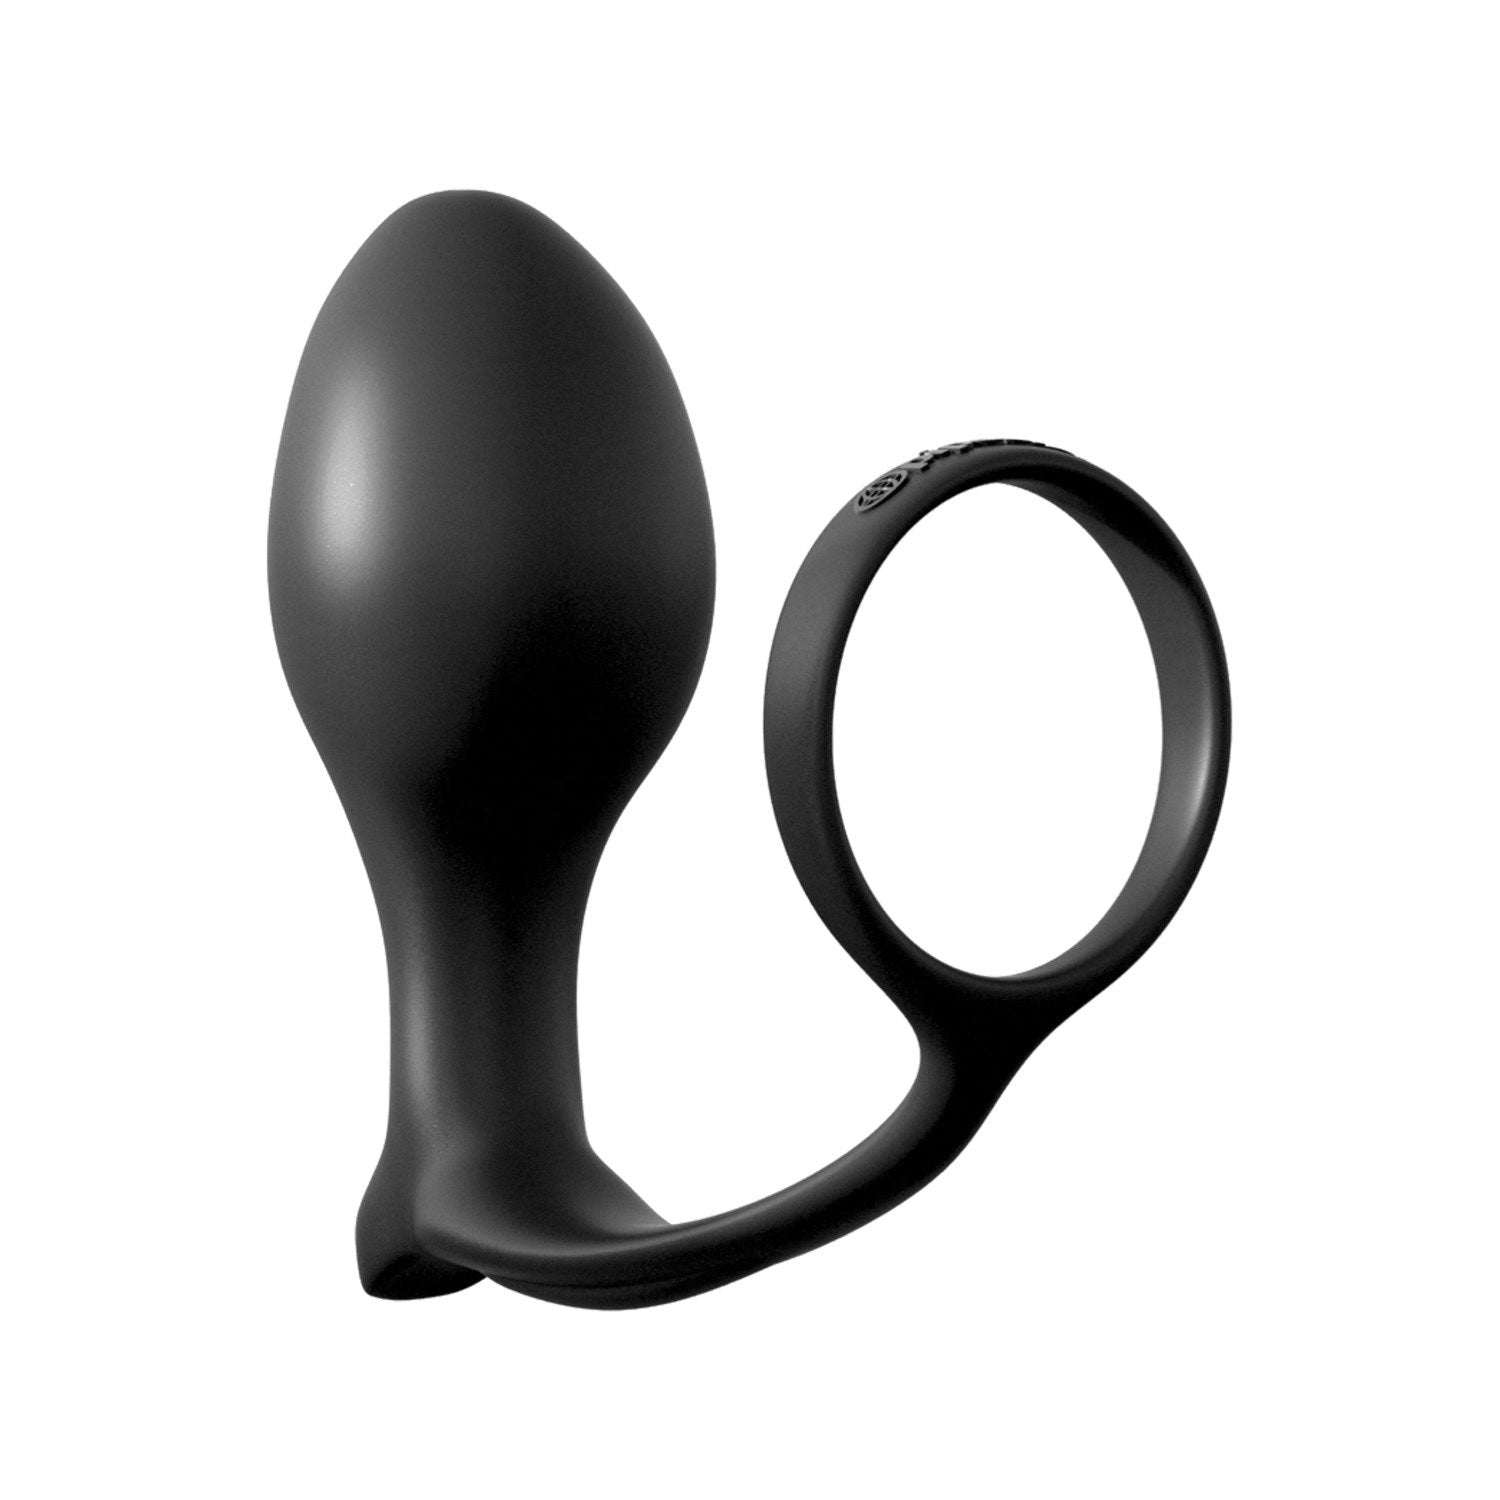 肛门幻想系列 Ass-Gasm 阴茎环高级插头 - 带肛门插头的黑色阴茎环 by Pipedream